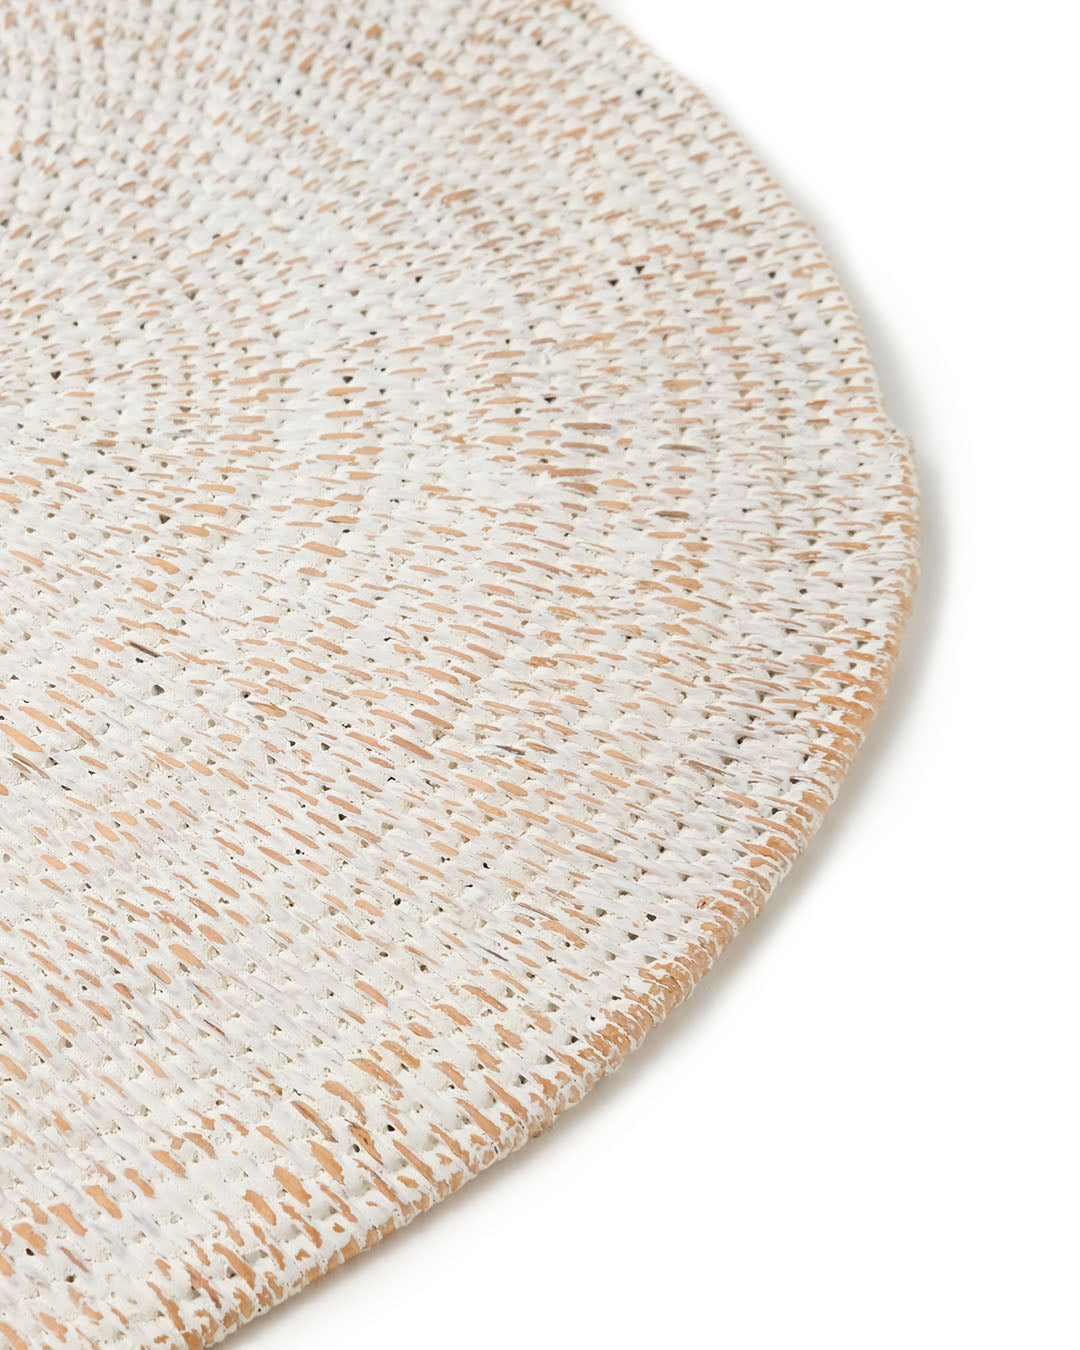 Mantel individual de ratán natural ovalado Sampit B decorativo, hecho a mano con acabado blanco,  largo 40 cm profundidad 30 cm, hecho en Indonesia